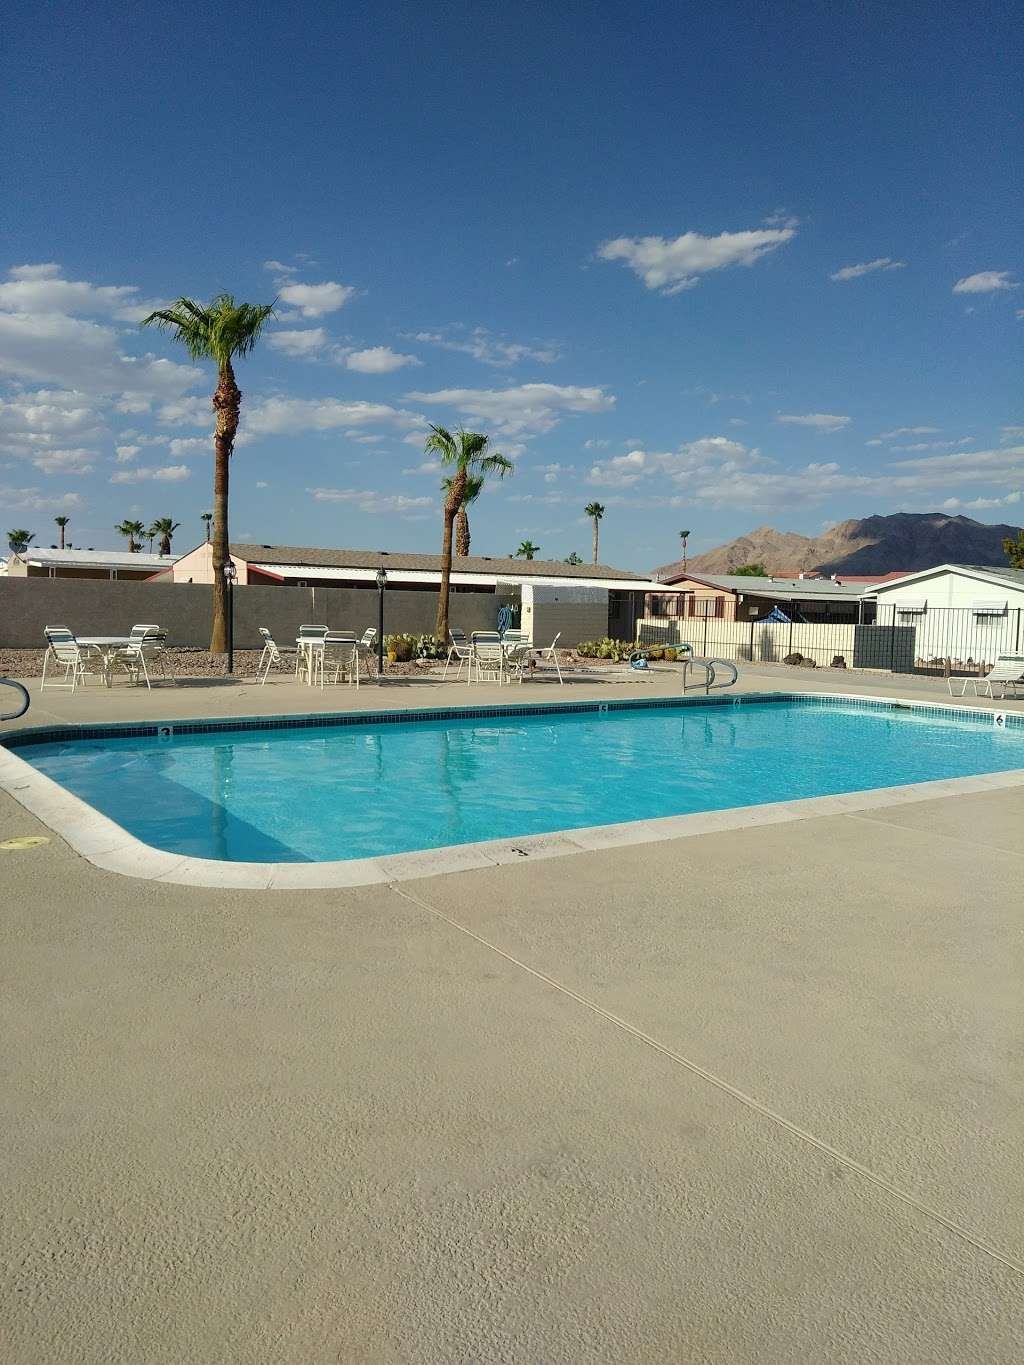 Boulder Station Hotel Casino | 4111 Boulder Hwy, Las Vegas, NV 89121 | Phone: (702) 432-7777